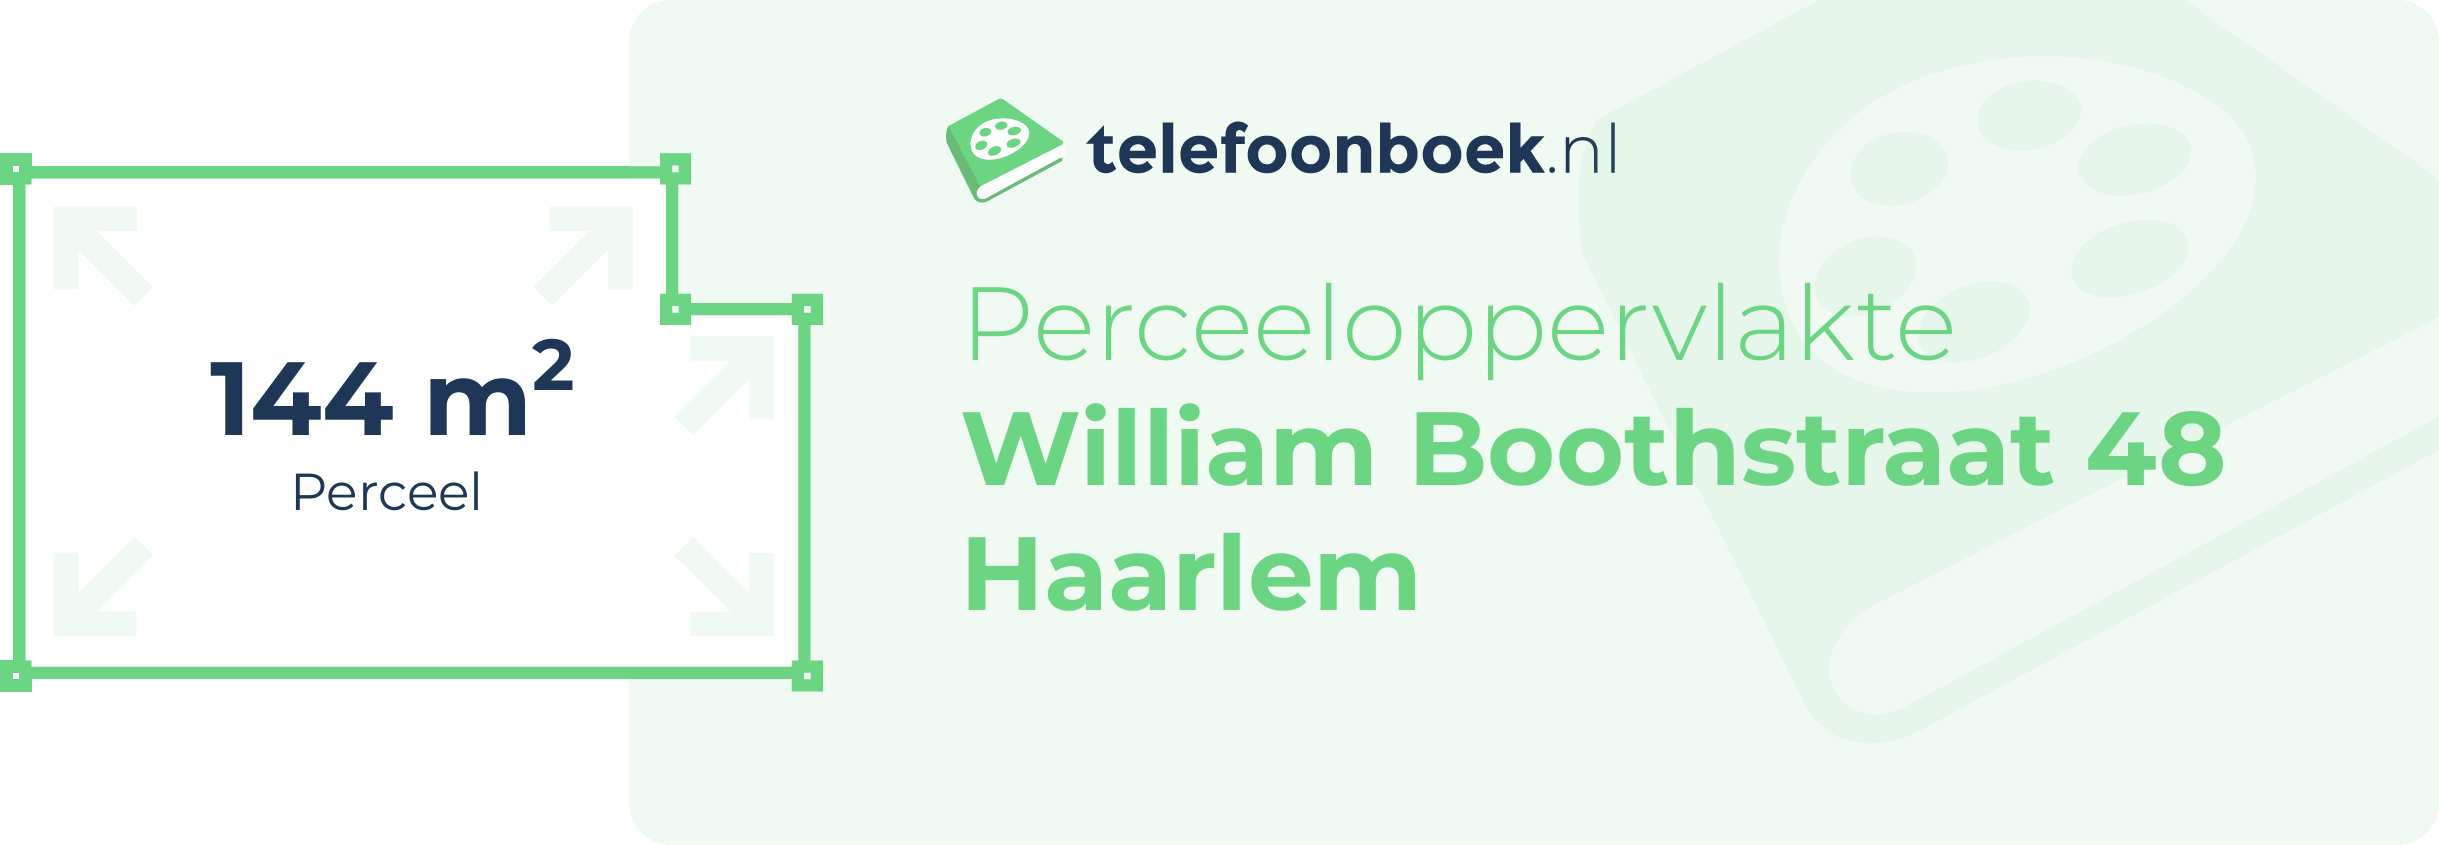 Perceeloppervlakte William Boothstraat 48 Haarlem